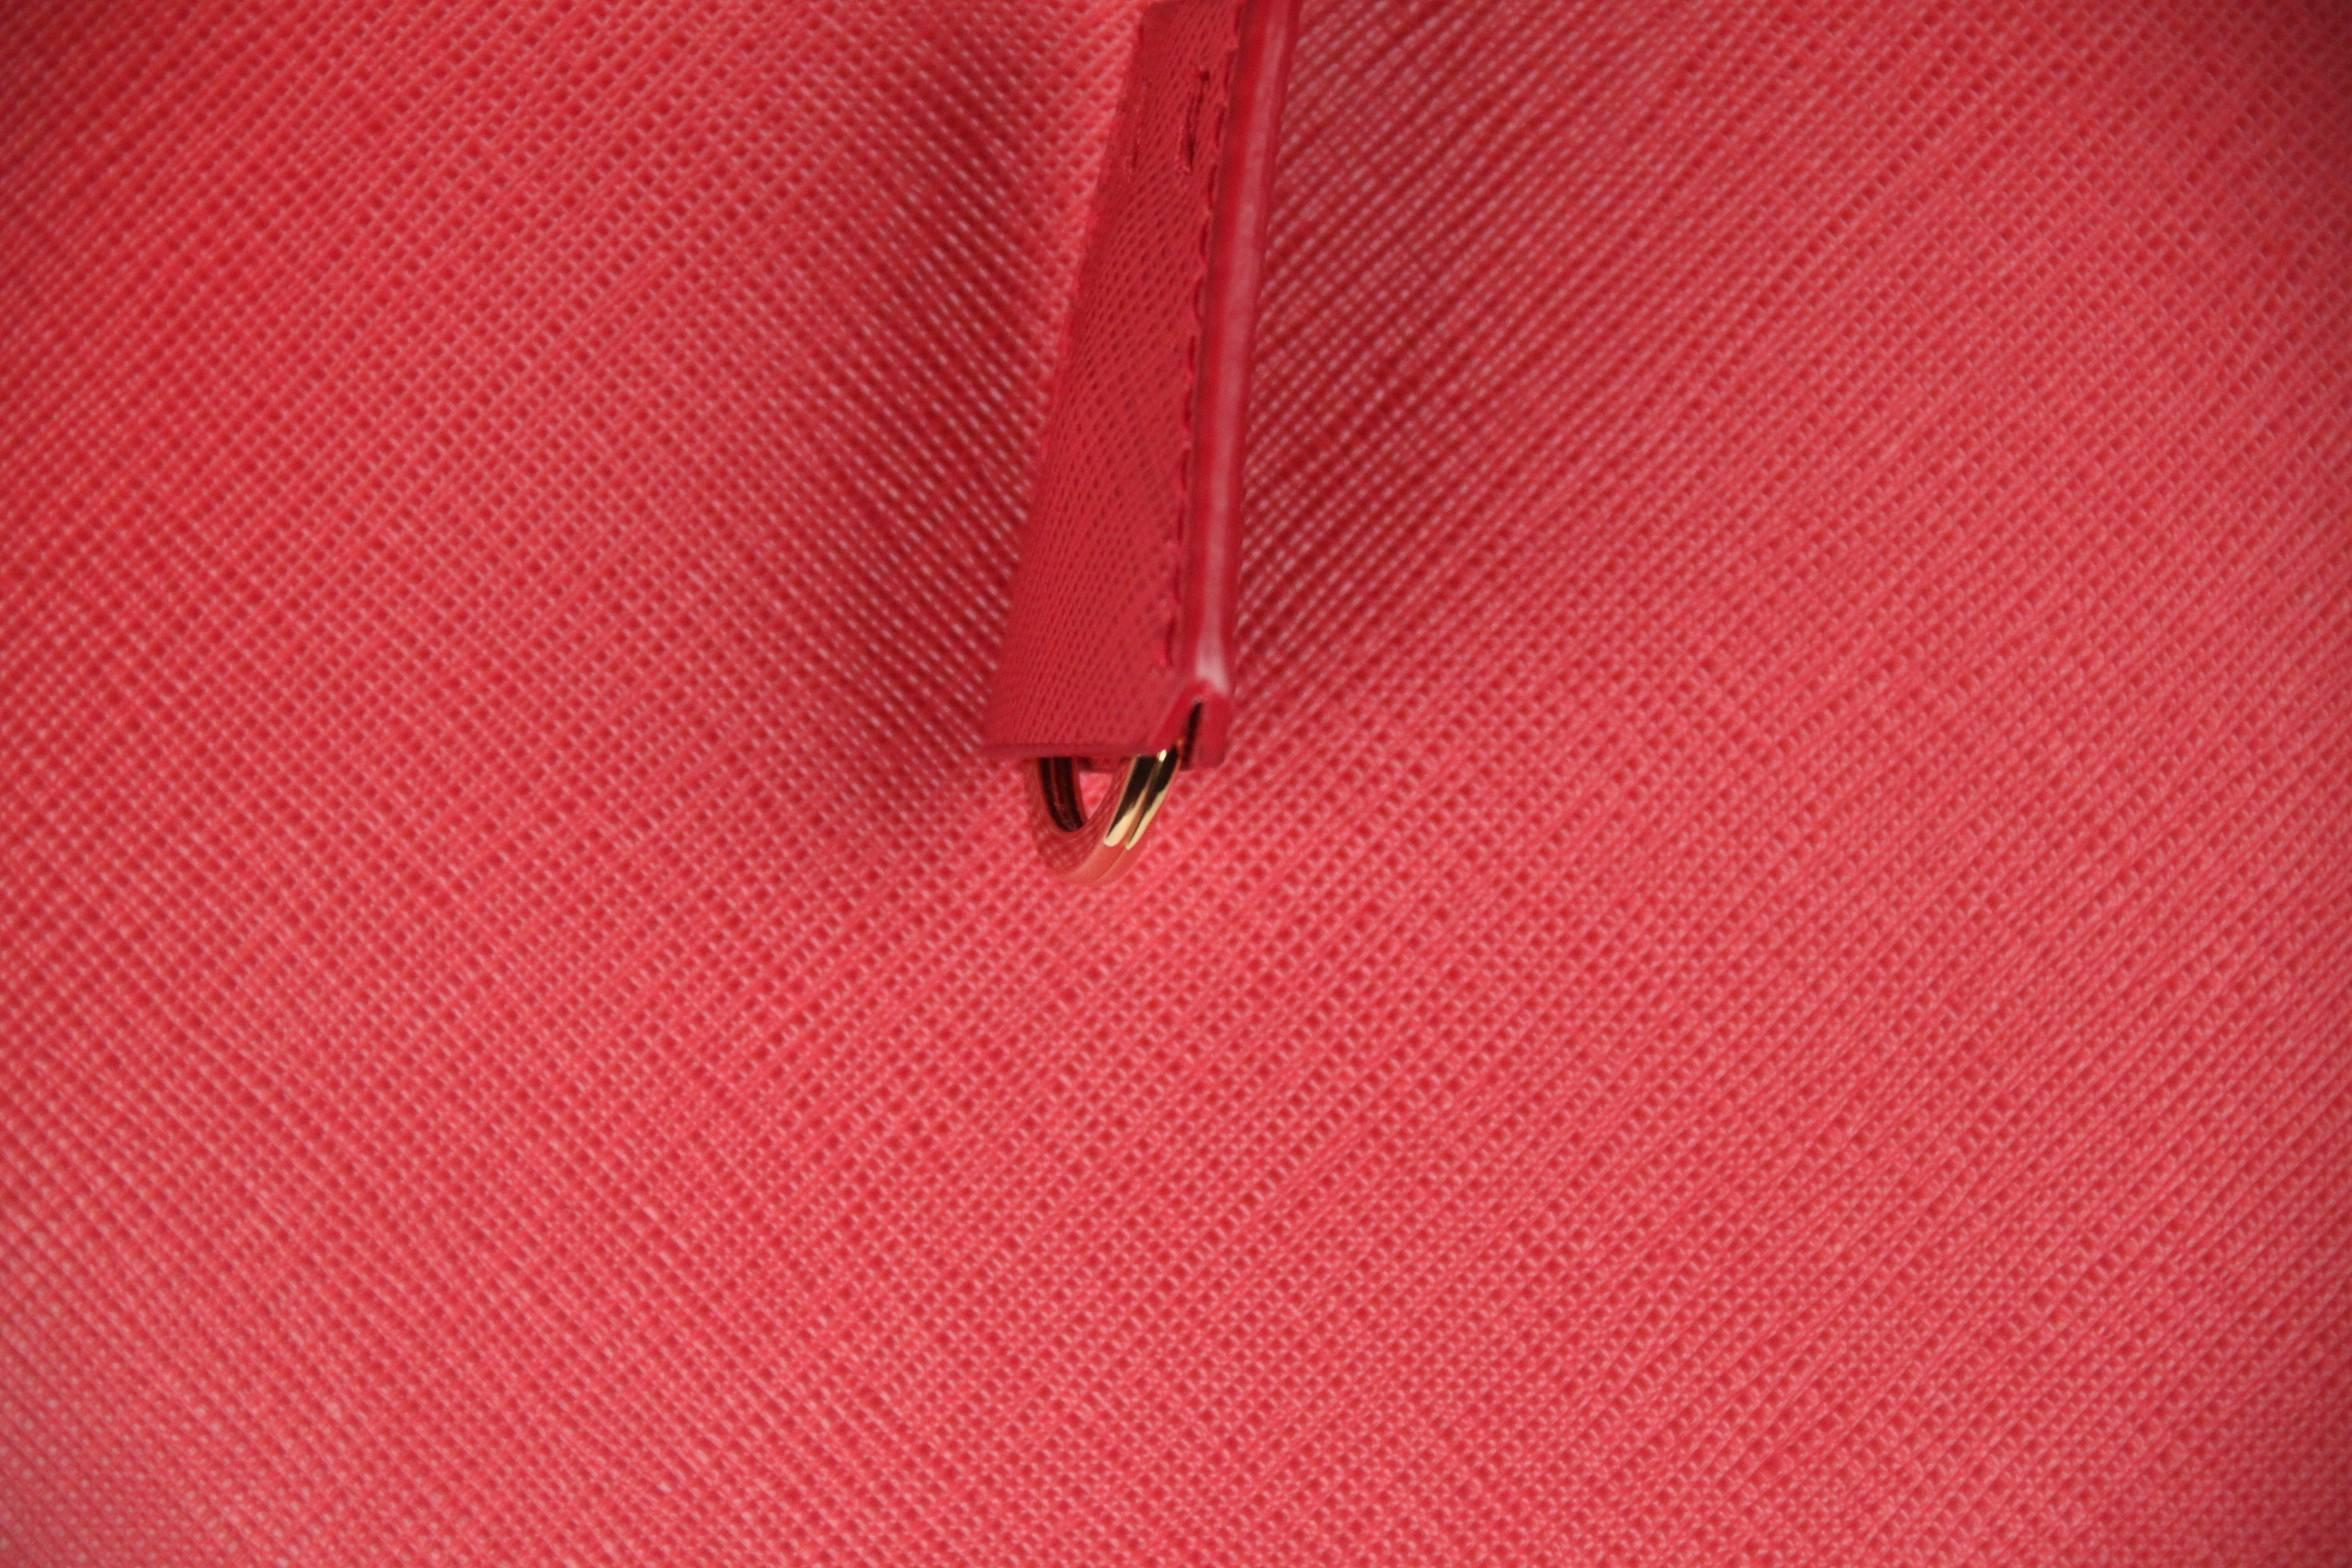 Women's PRADA Red FUOCO SAFFIANO LUX Leather TOTE Satchel 1BA274